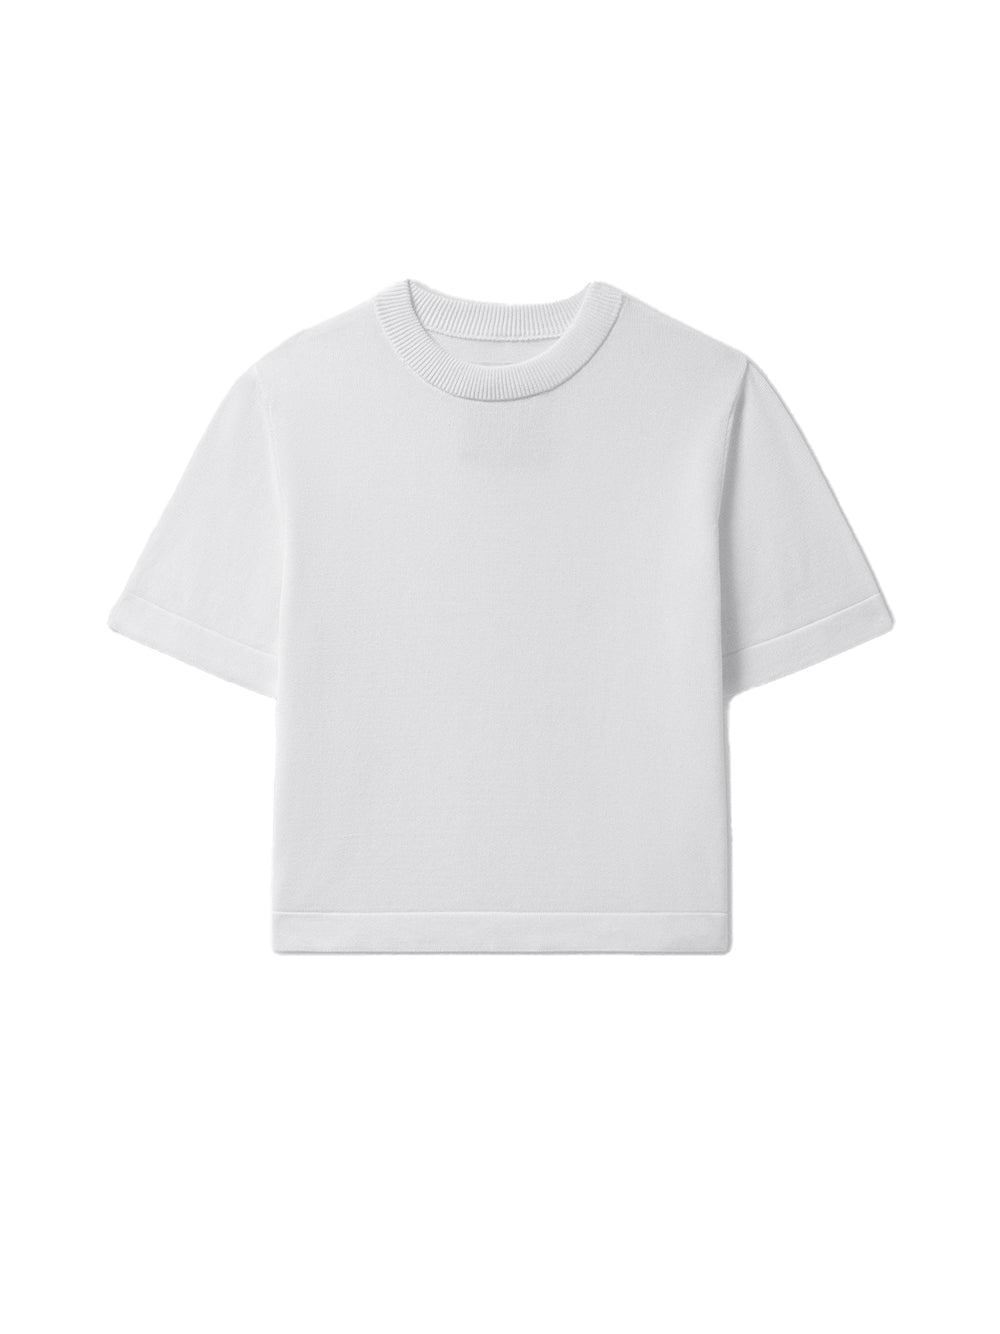 White Cardo T-shirt